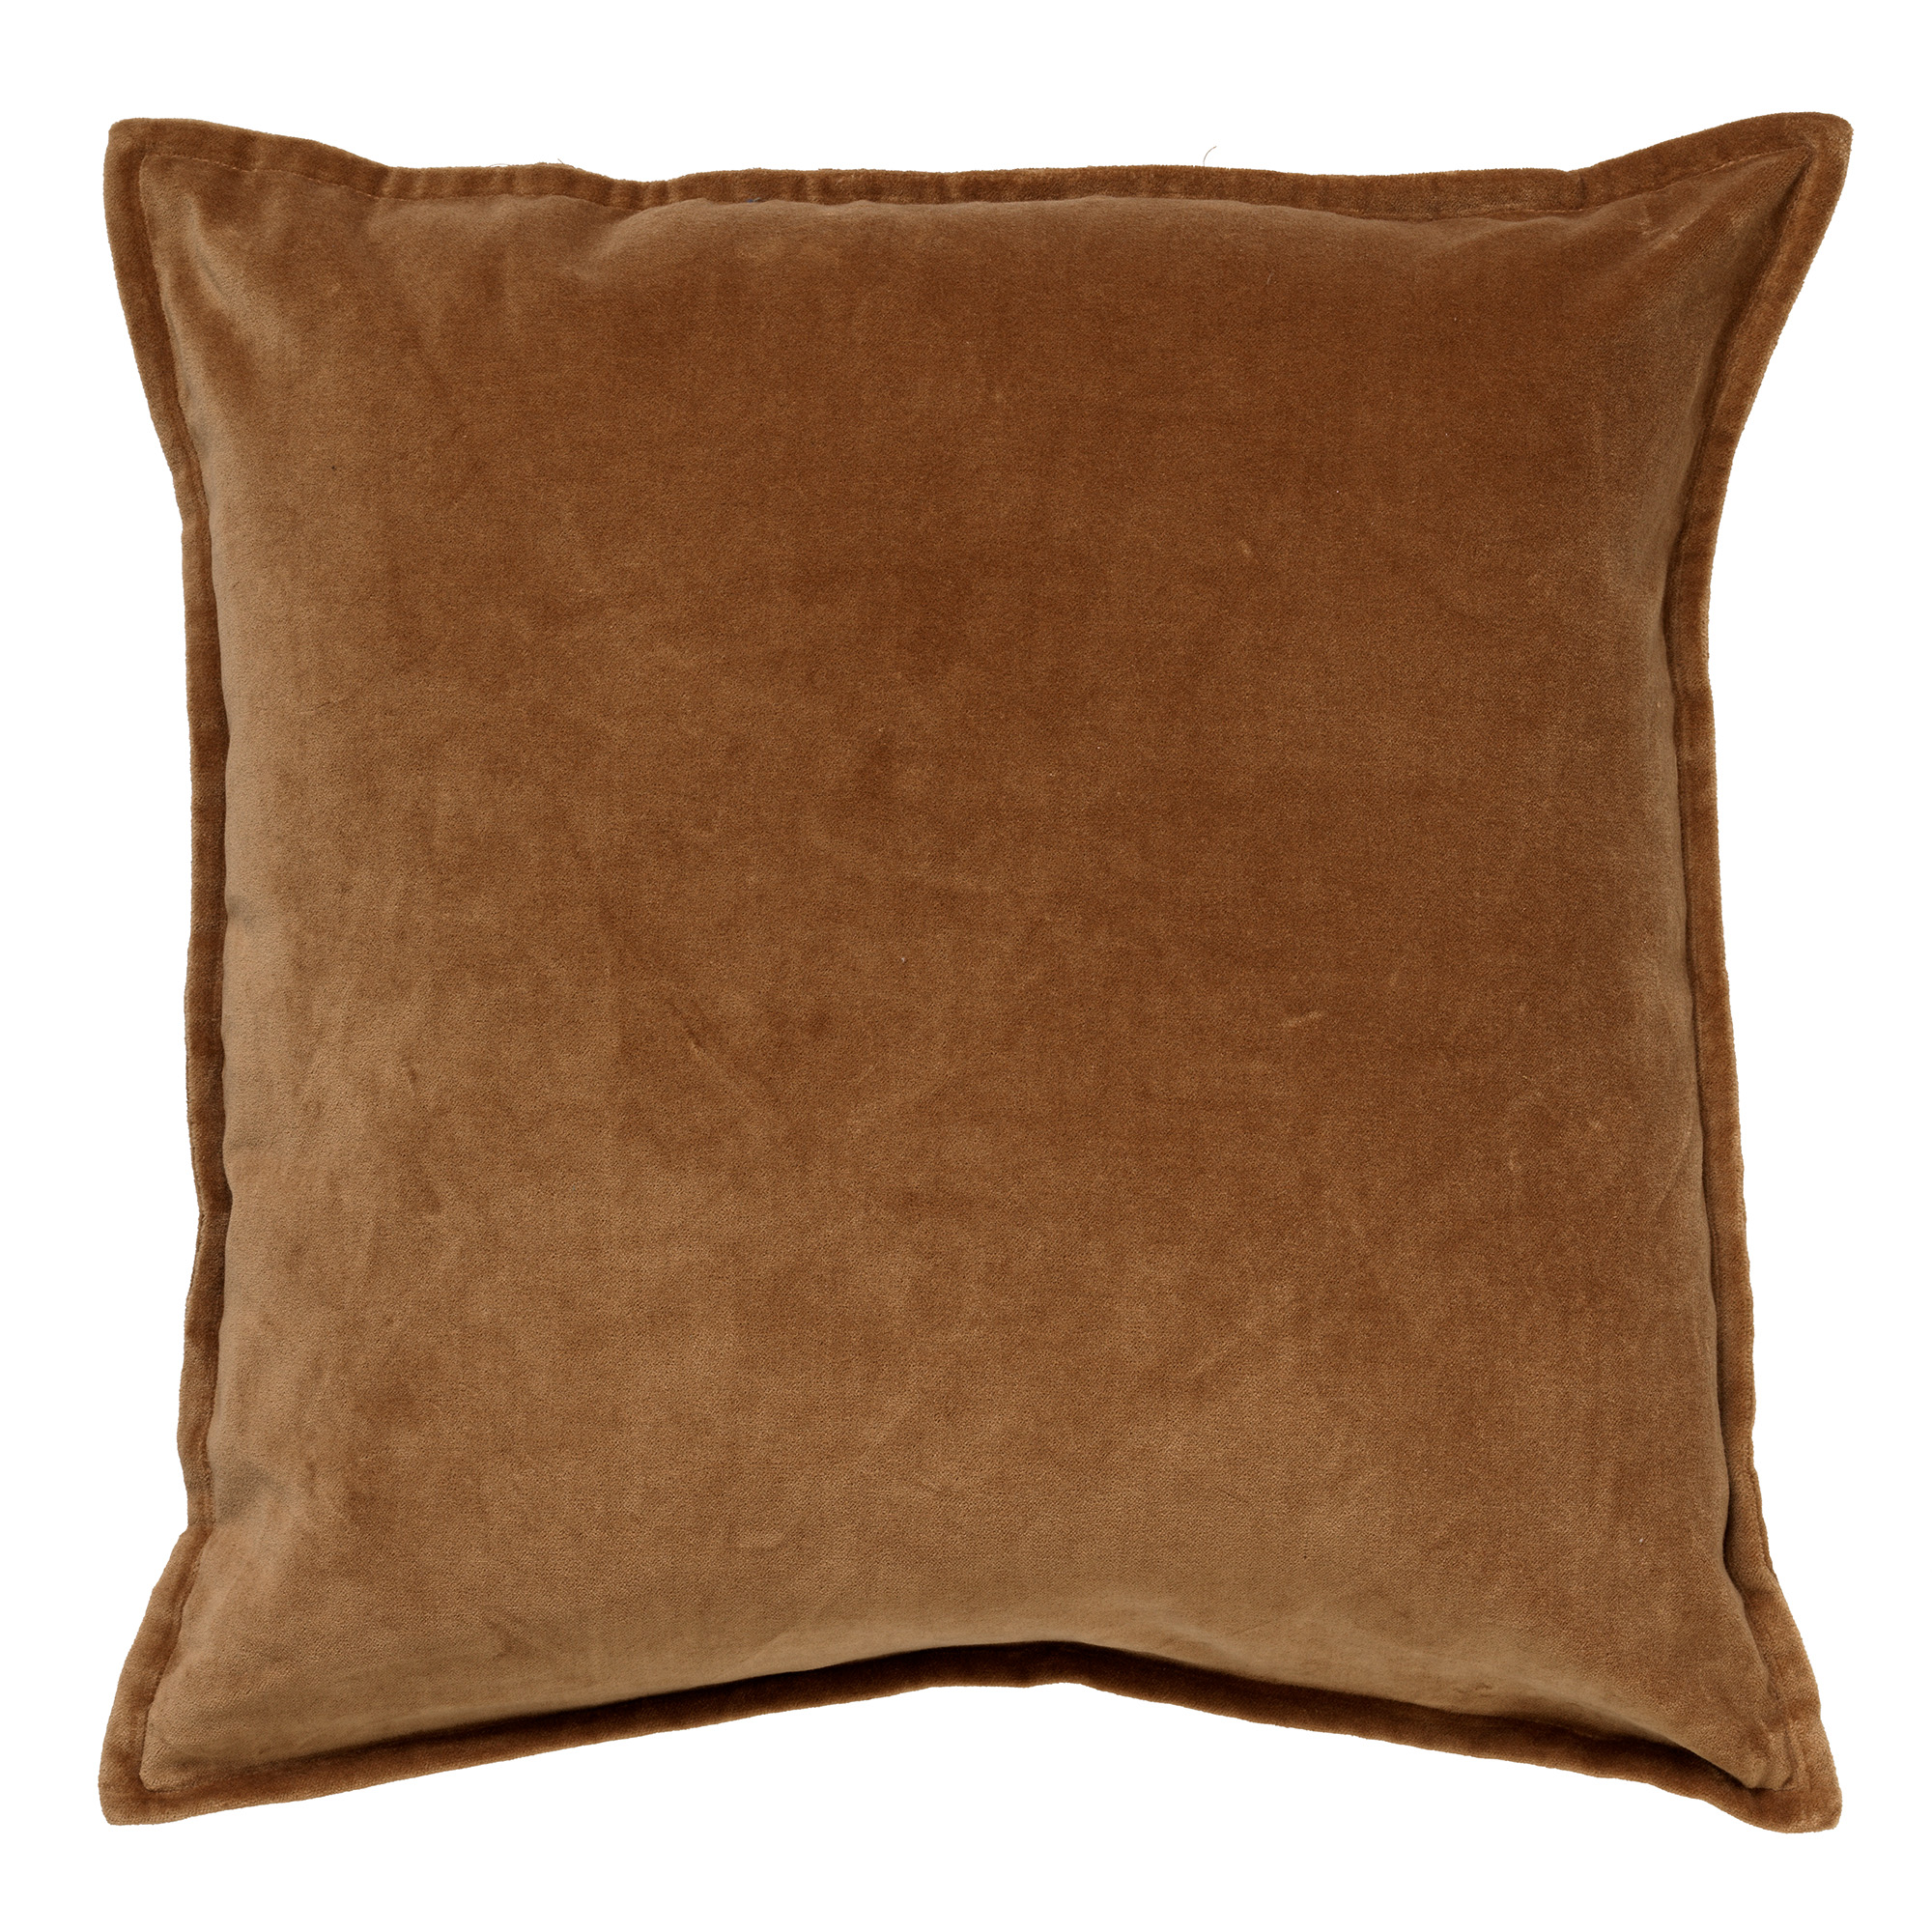 CAITH - Cushion 50x50 cm Tobacco Brown - brown